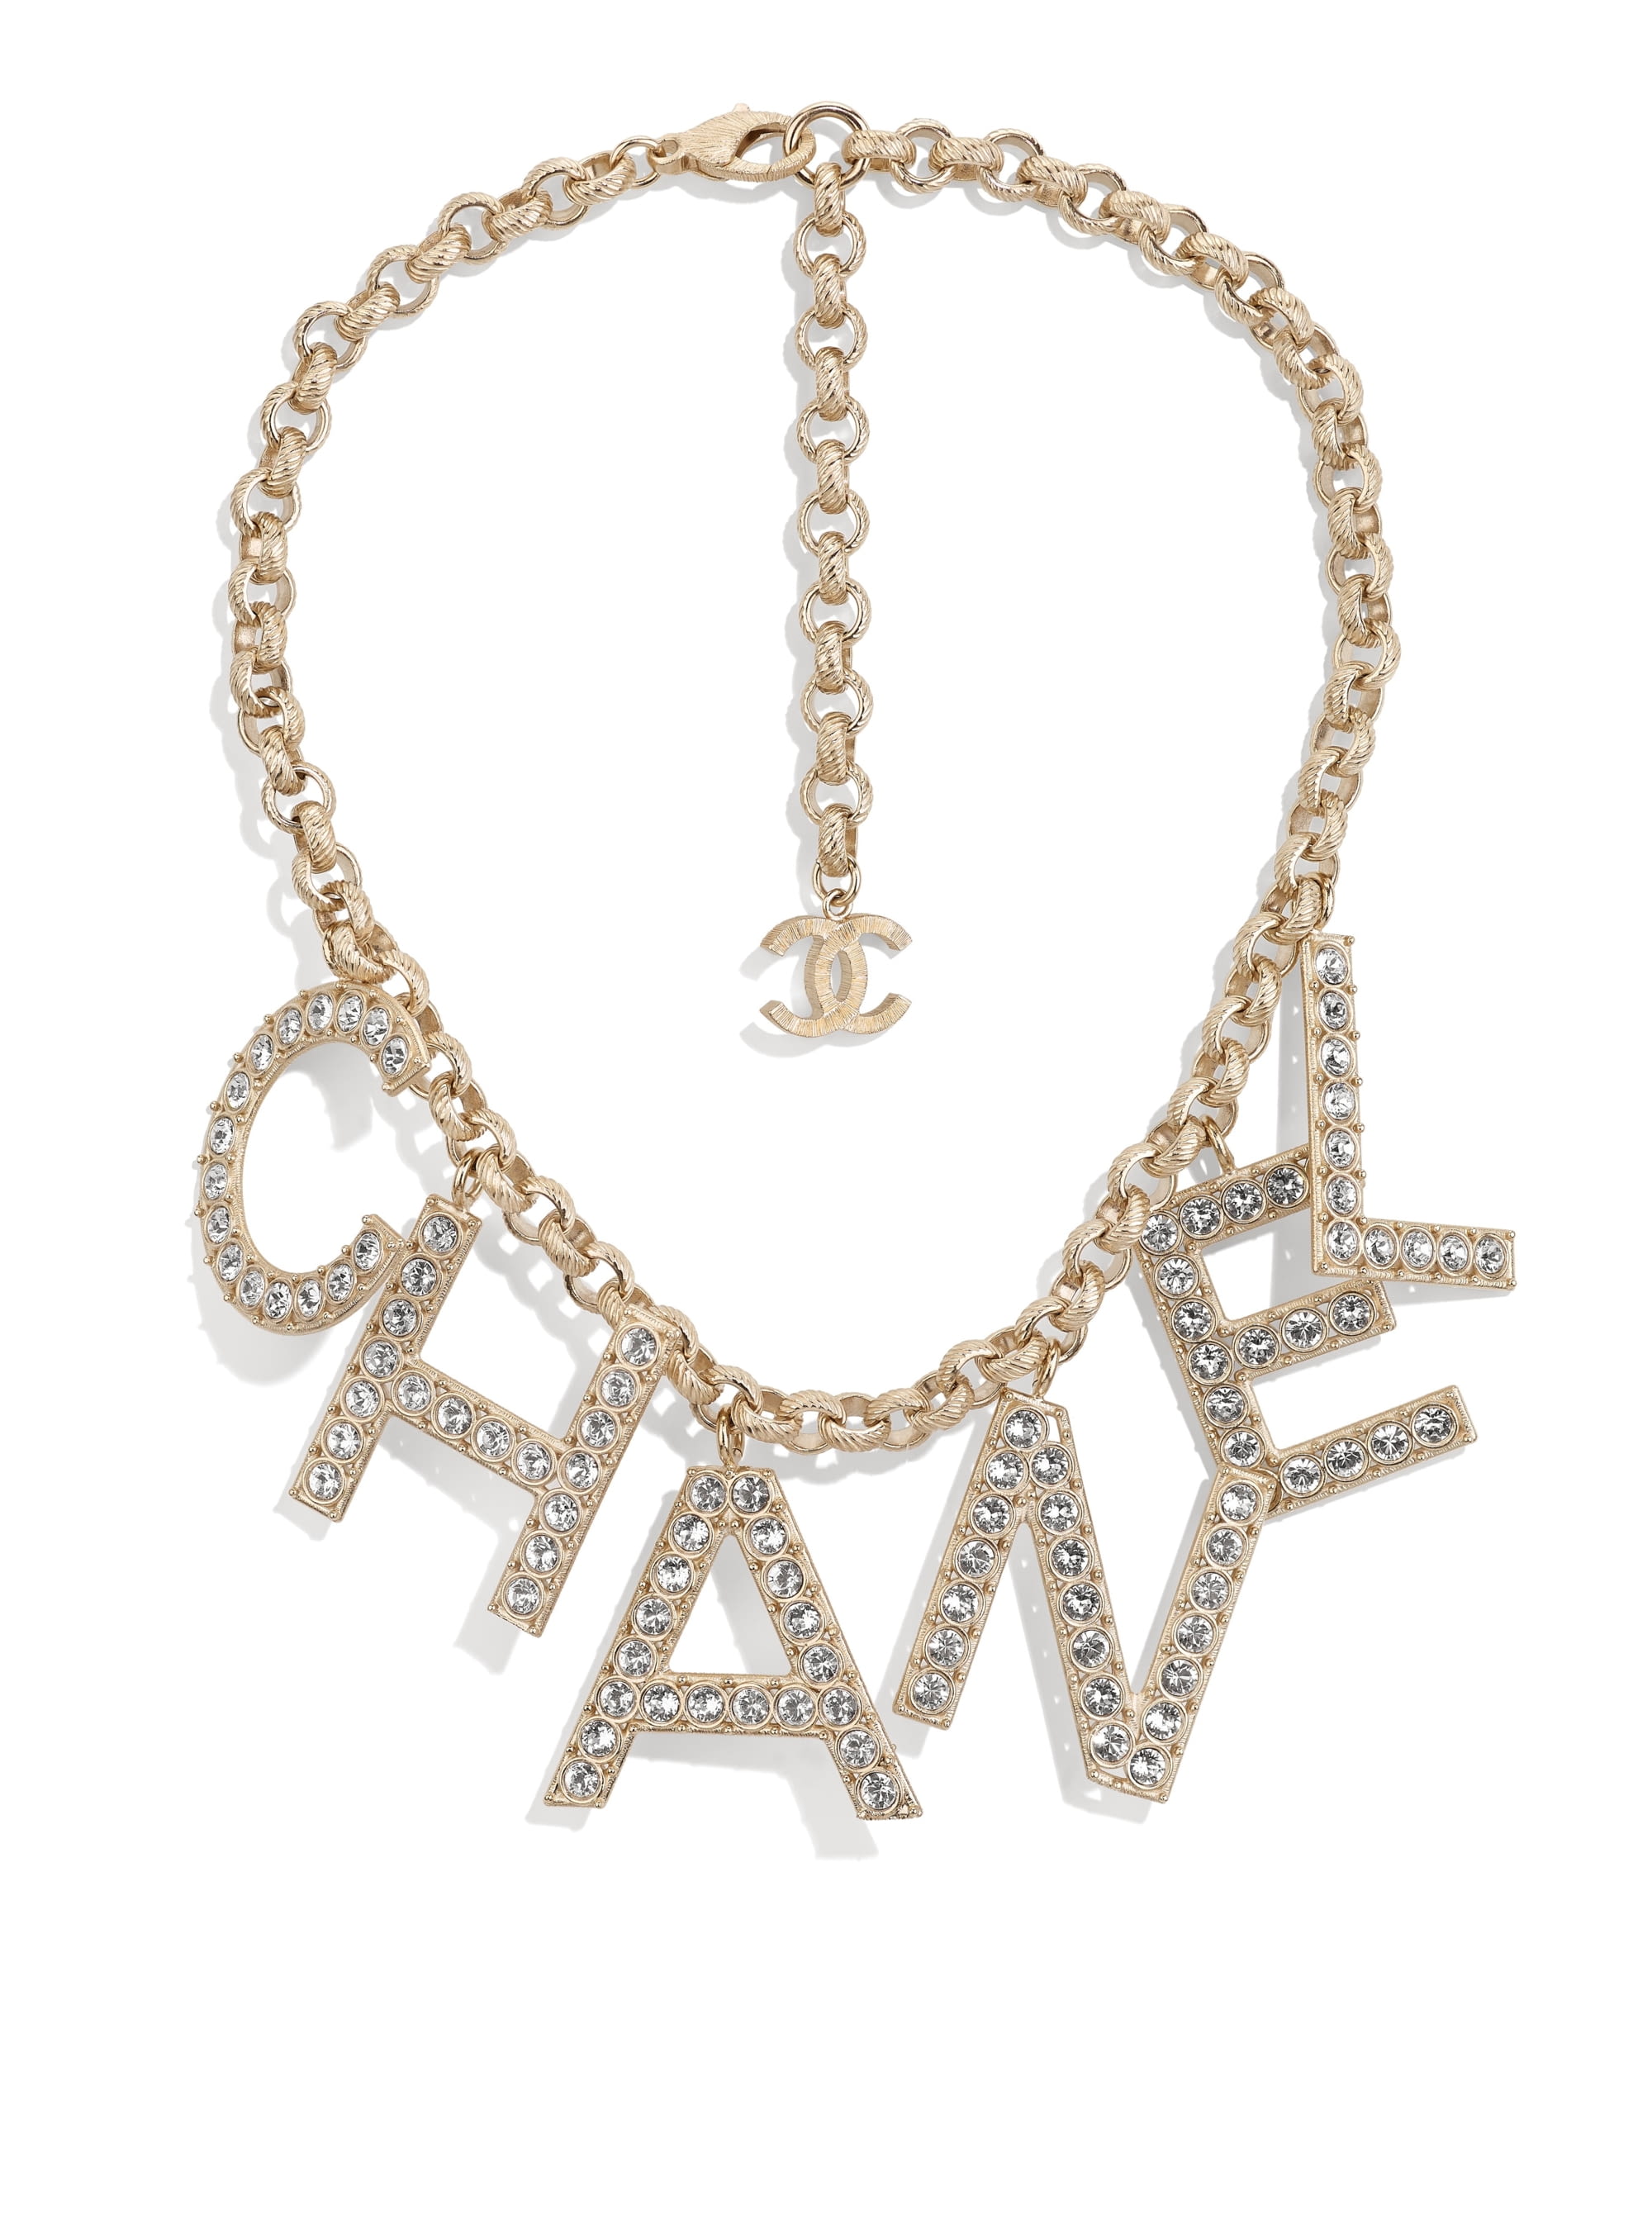 Chanel Métiers d'Art PF19 womenswear accessories #8 - Tagwalk: The